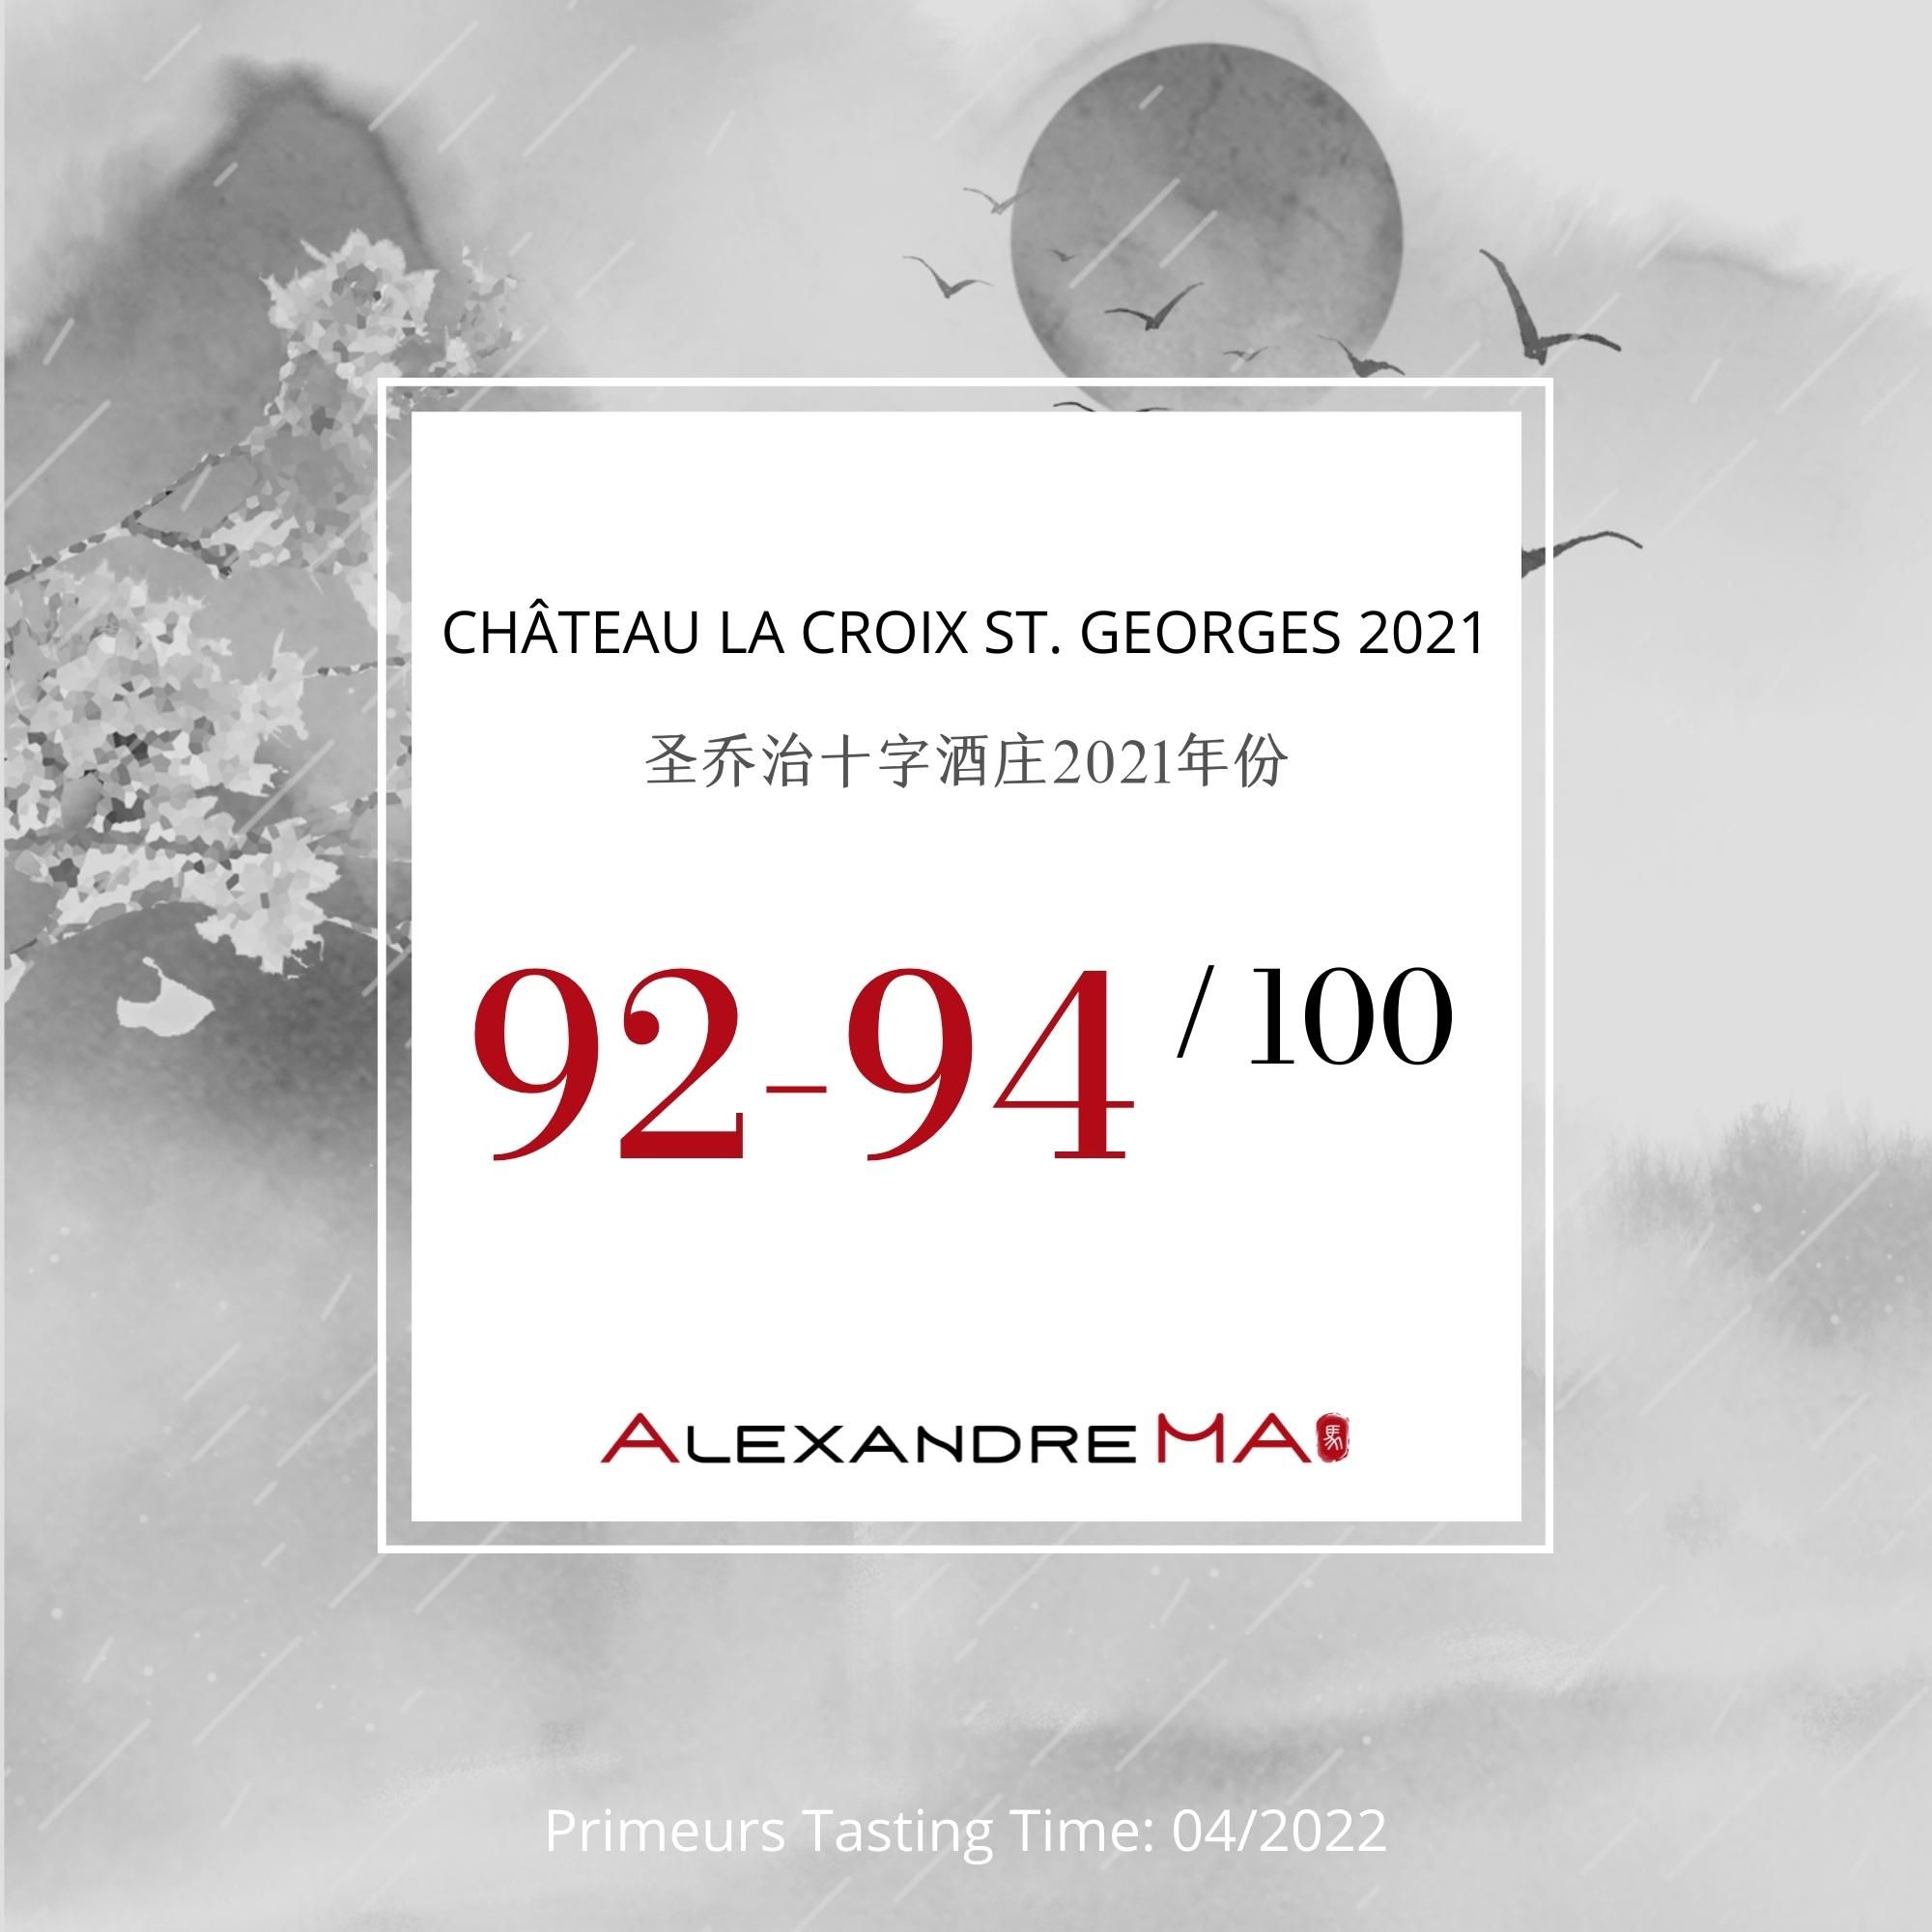 Château La Croix St. Georges 2021 - Alexandre MA